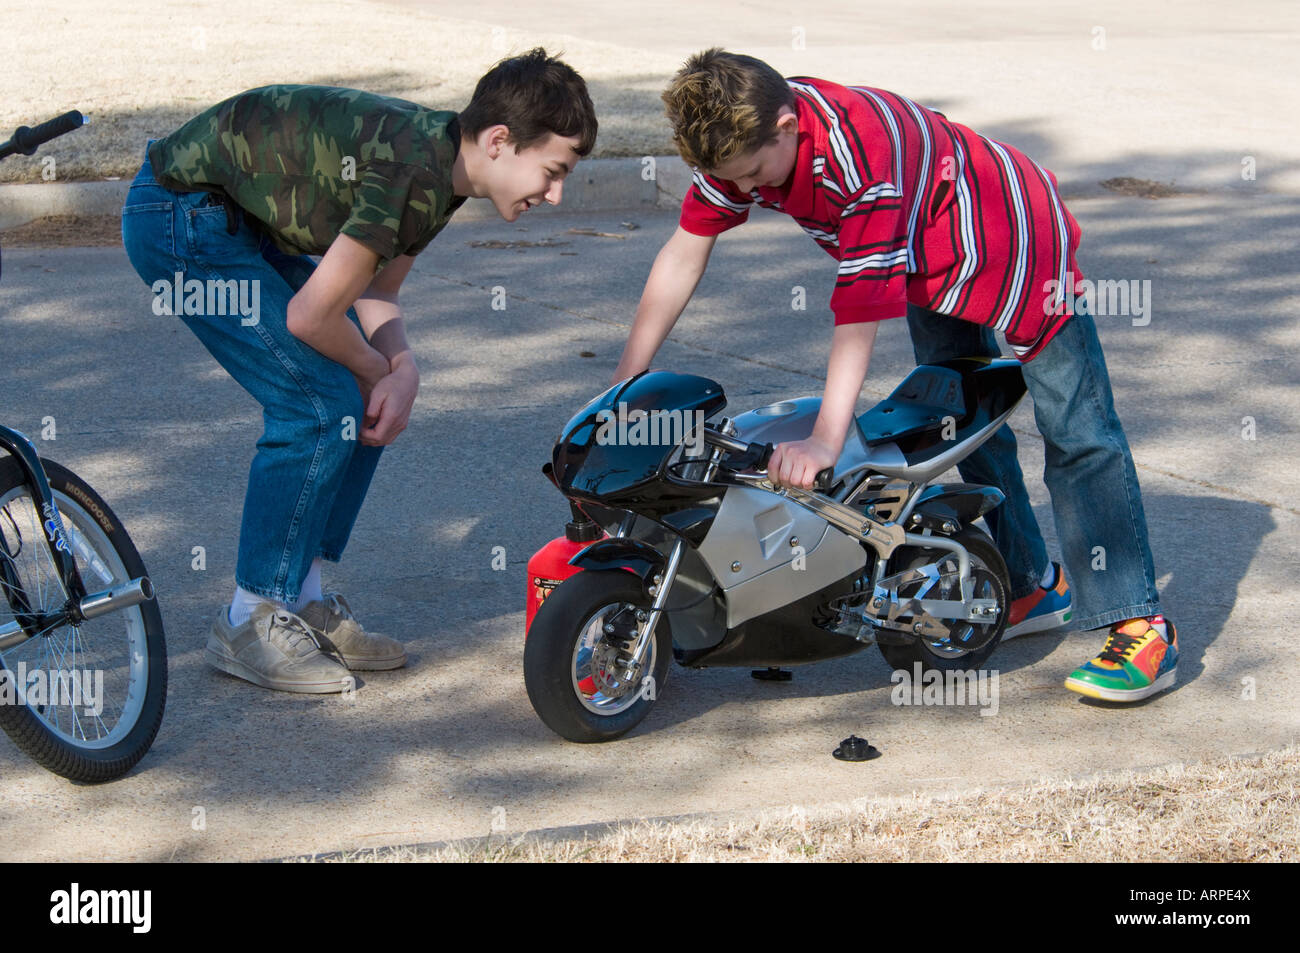 Deux adolescents une étude pocket bike motorisée qui a quitté en cours d'exécution. Banque D'Images